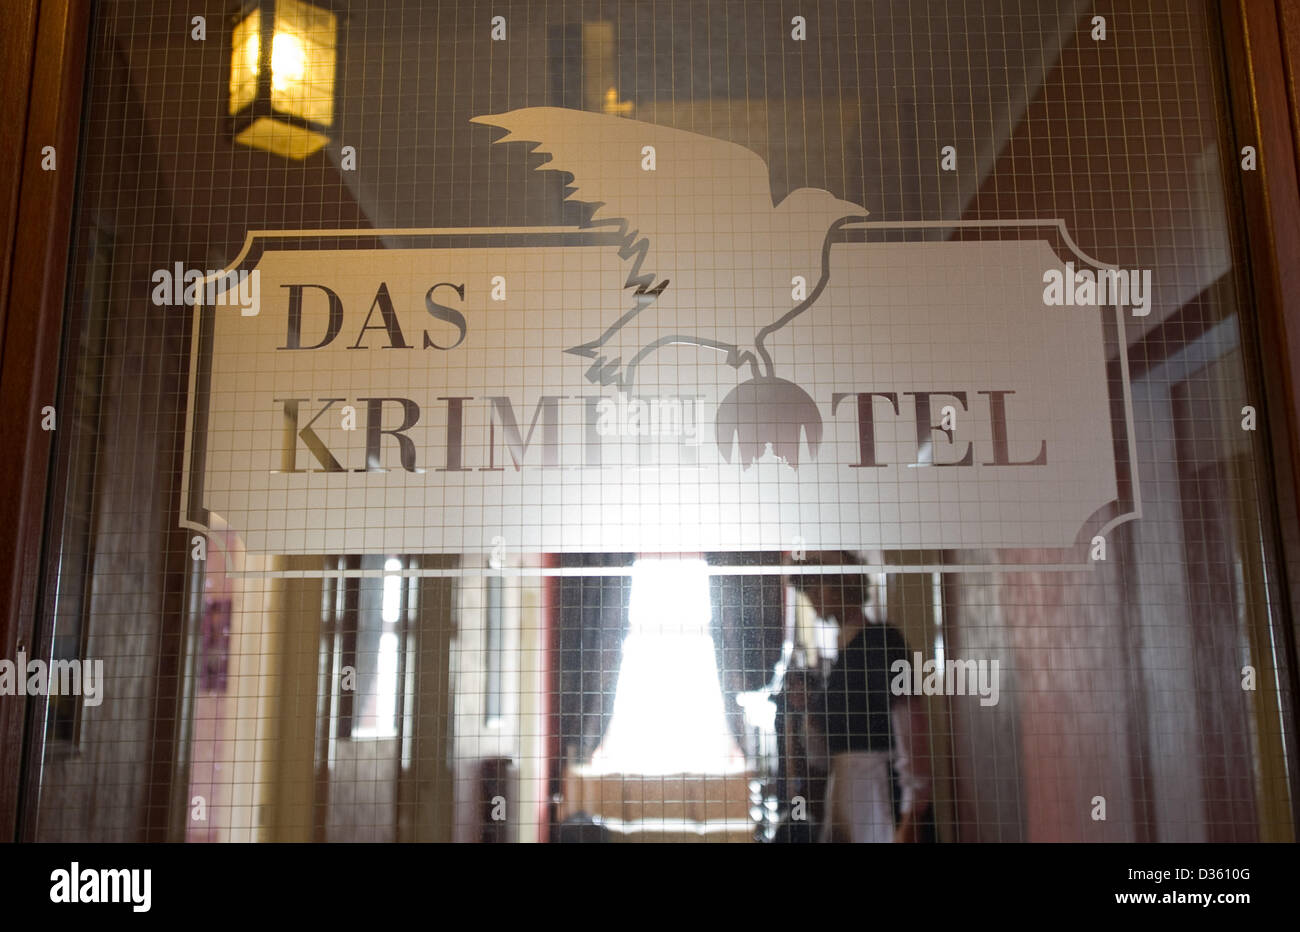 Das Krimihotel in der Krimistadt Hillesheim in der Eifel. Das Hotel wurde 2005 eröffnet und erfreut sich seitdem größter Beliebtheit. Die 25 Themenzimmer reichen von James Bond, über Derrik bis hin zu Agatha Christi. Foto Stock